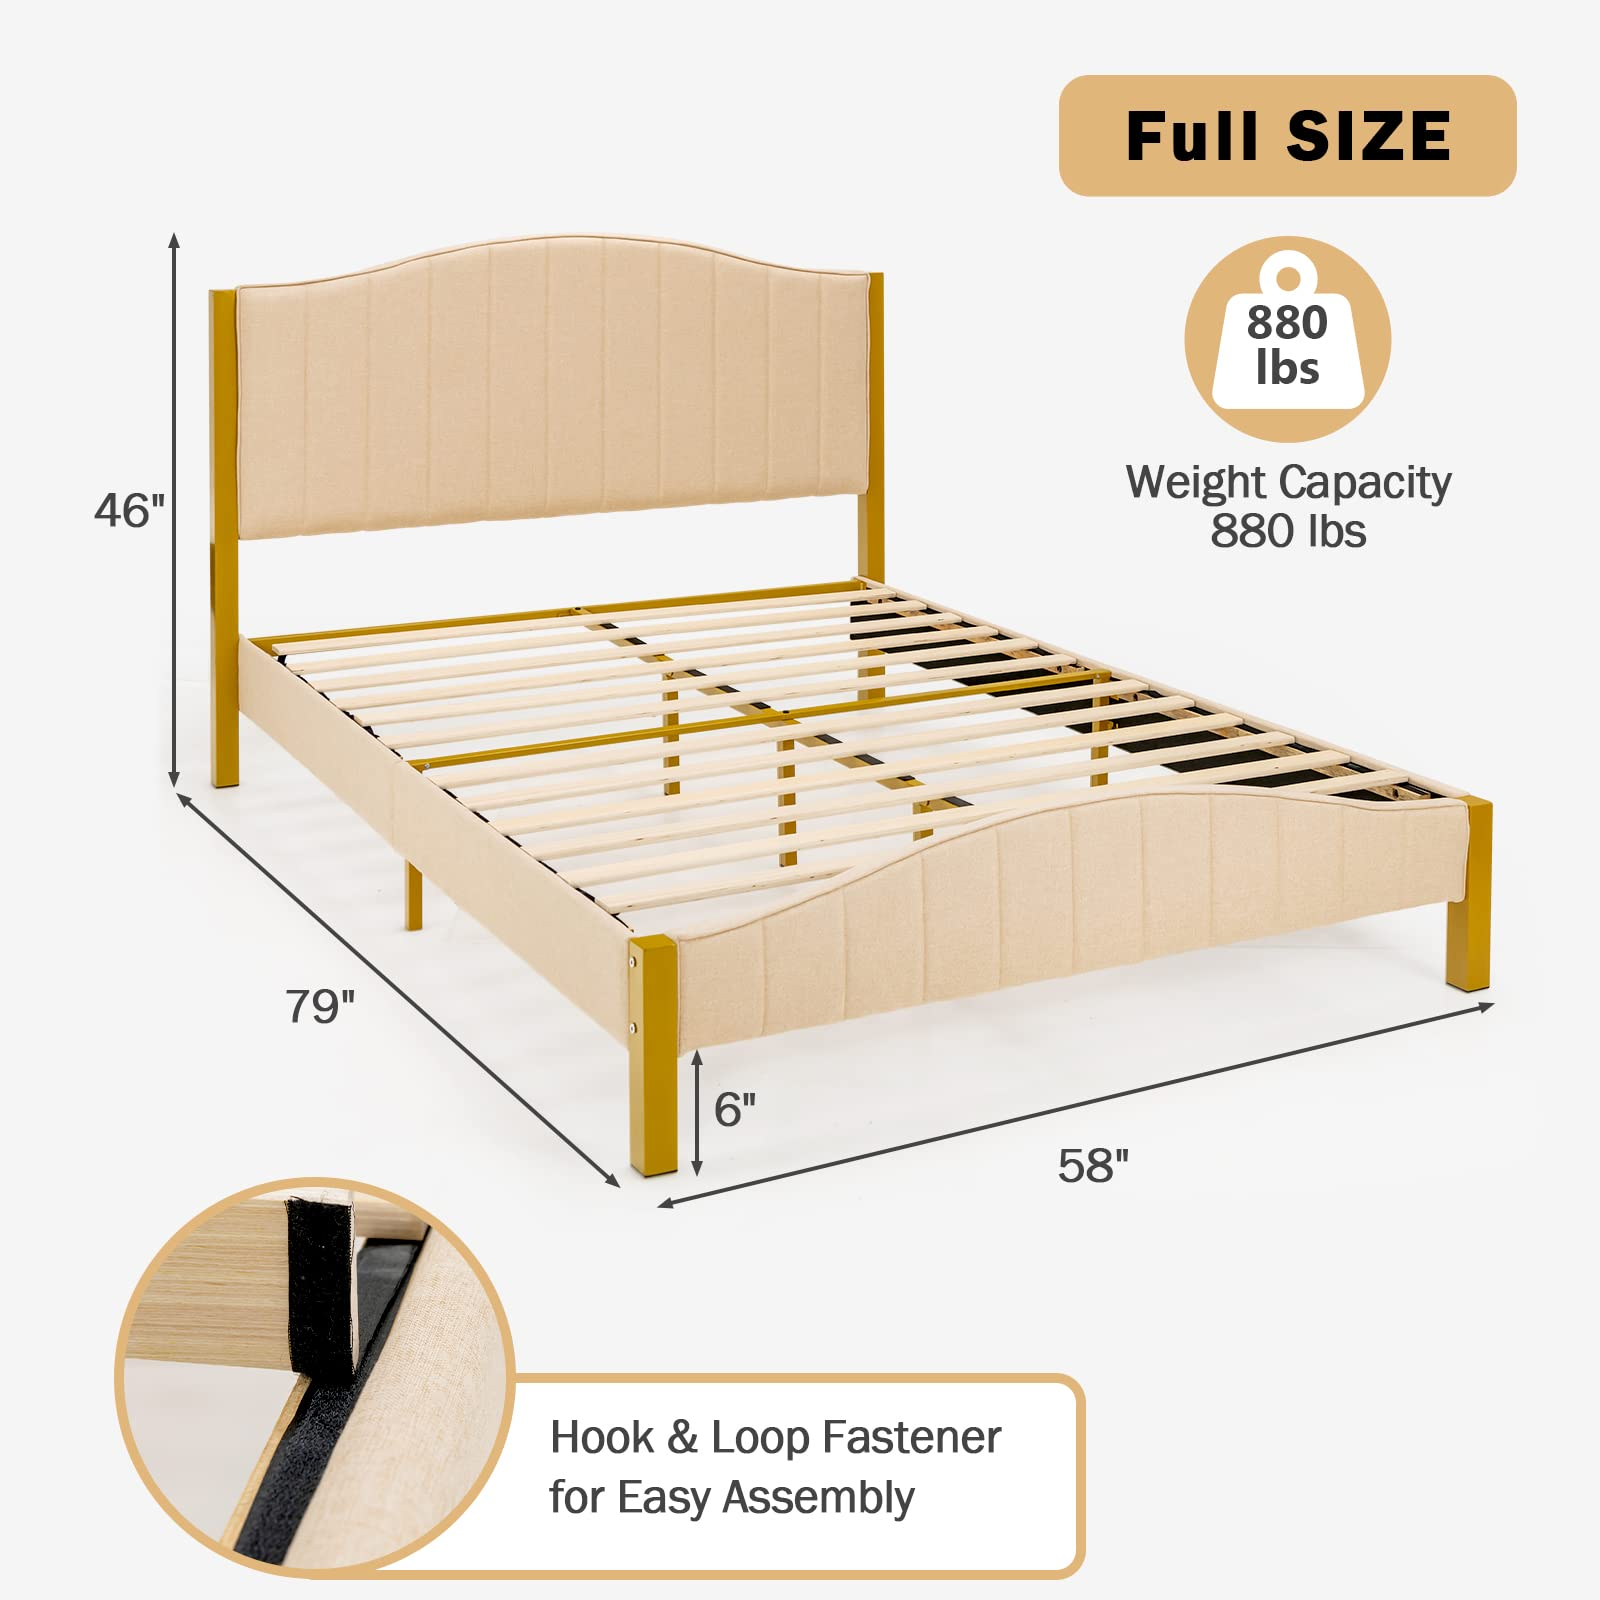 Giantex Full Size Upholstered Bed Frame